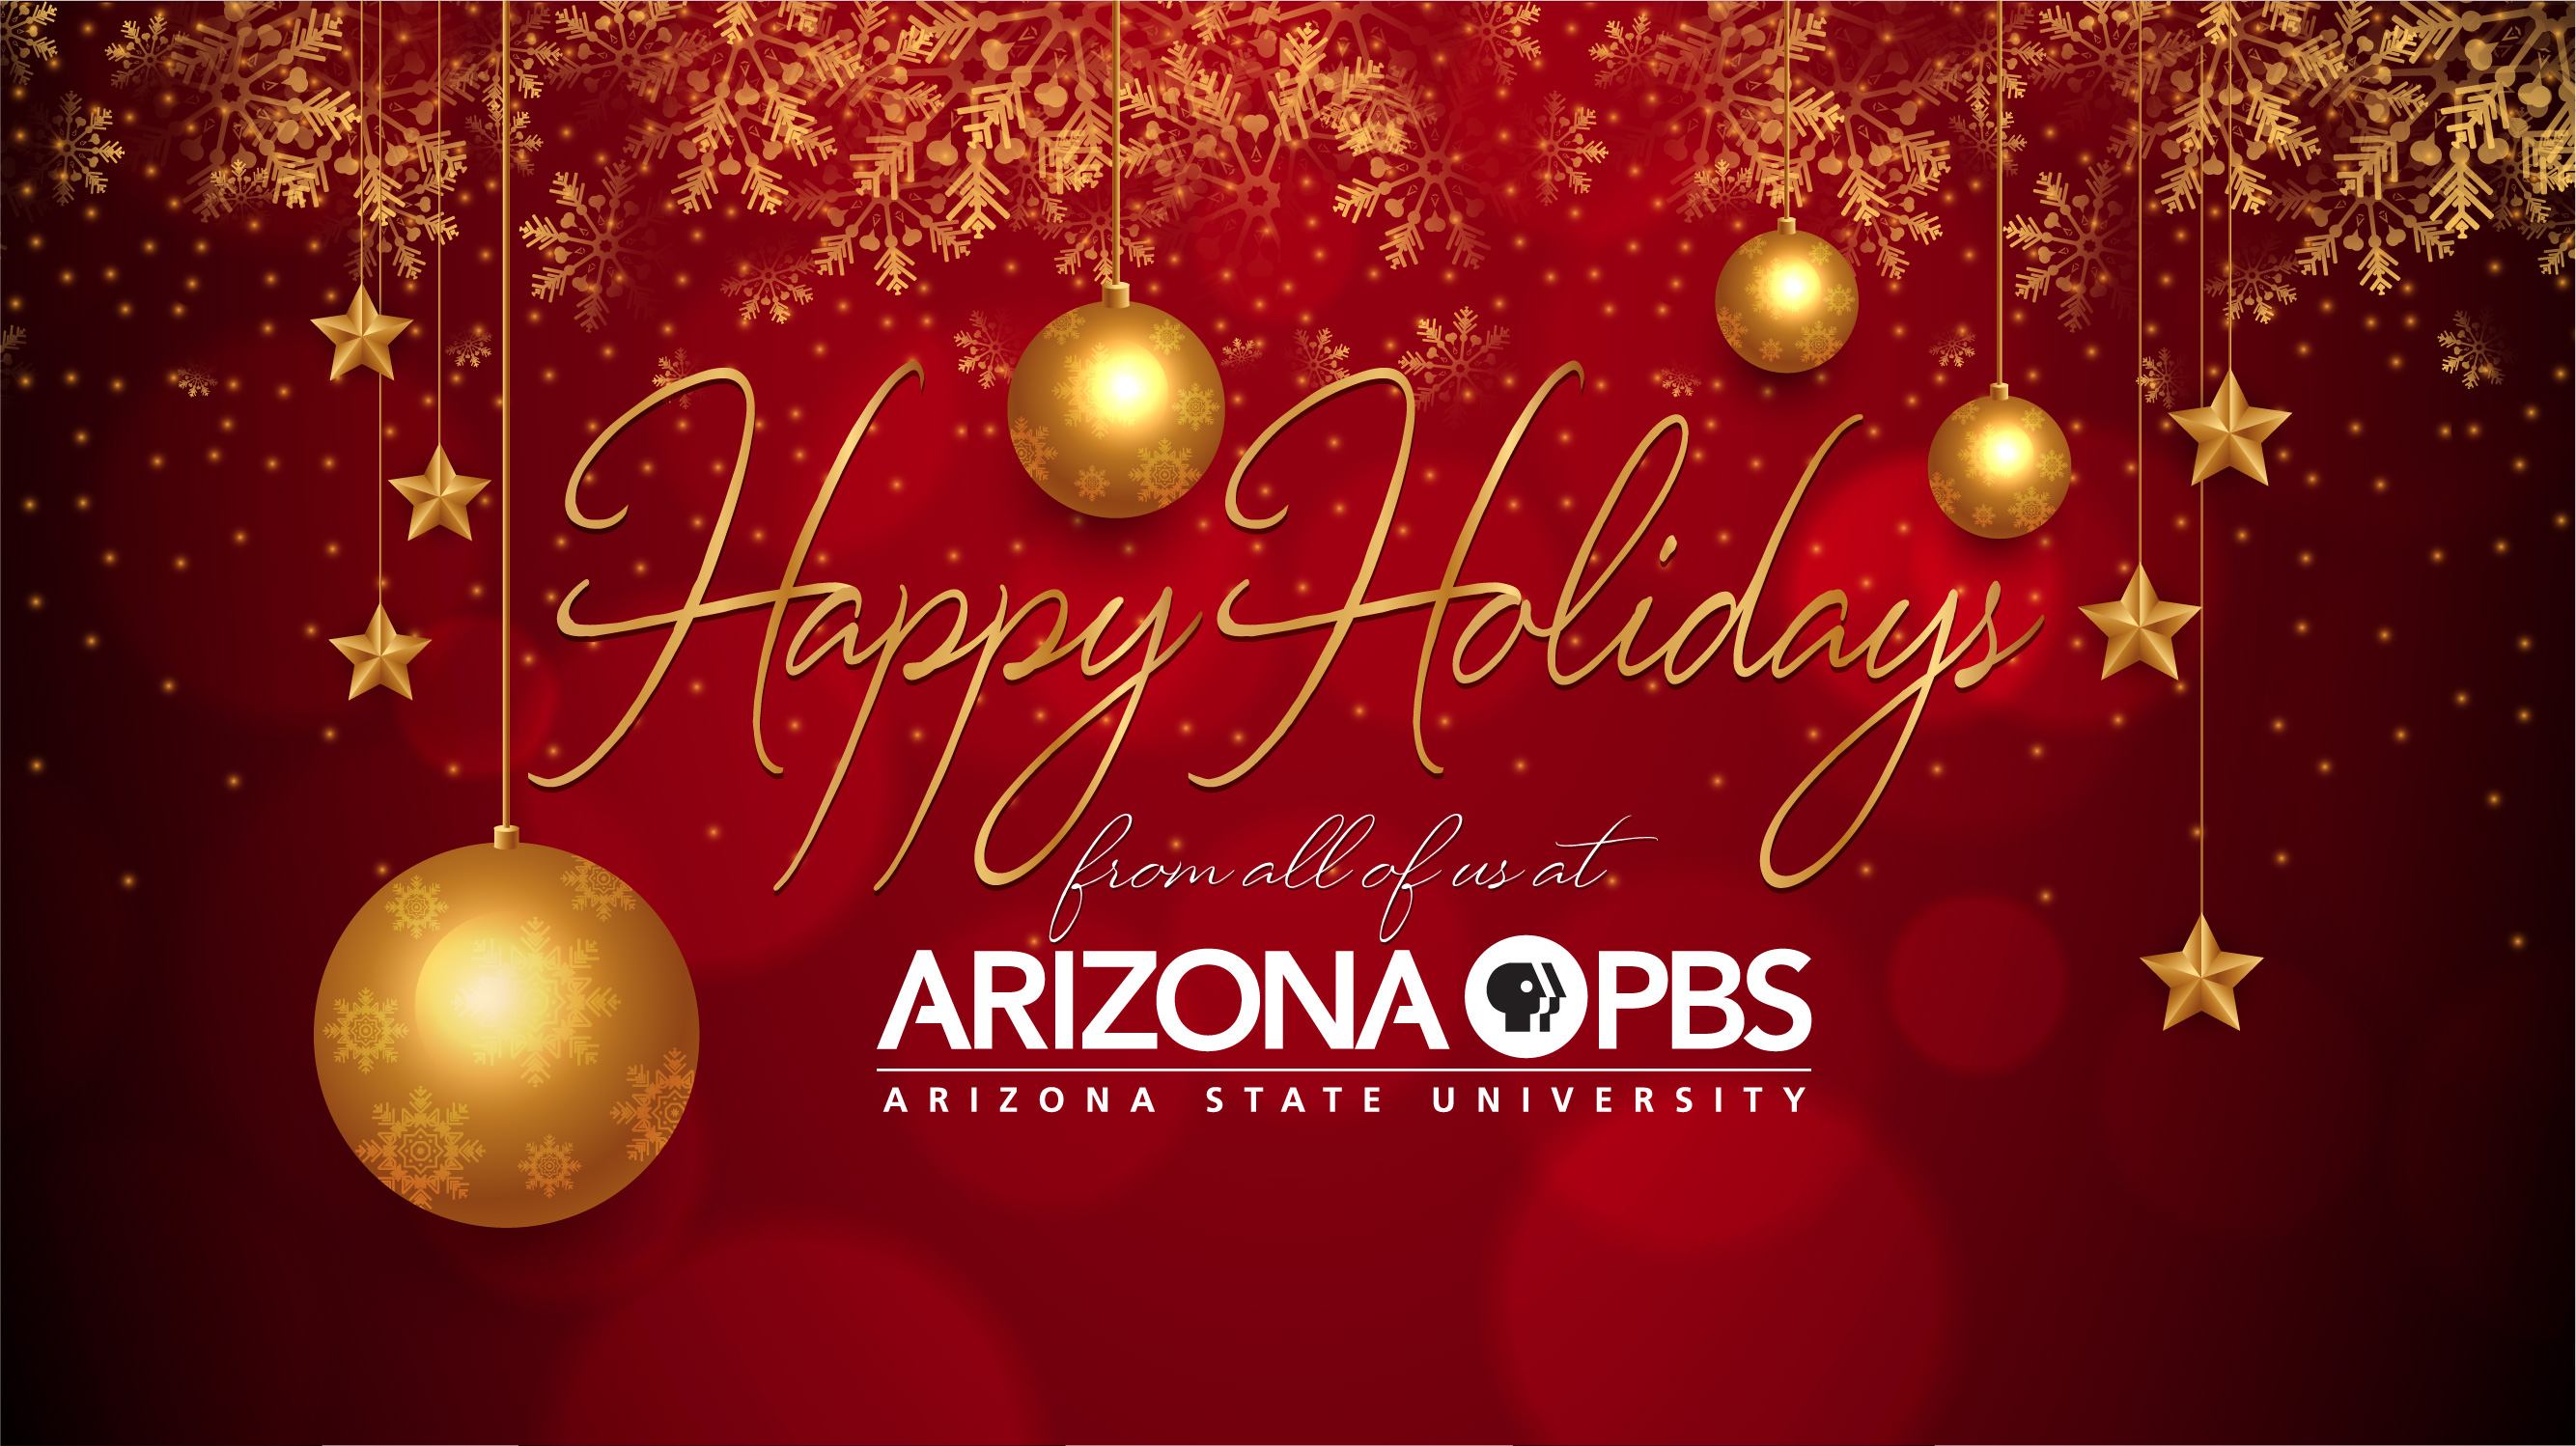 Happy Holidays From Arizona Pbs Arizona Pbs